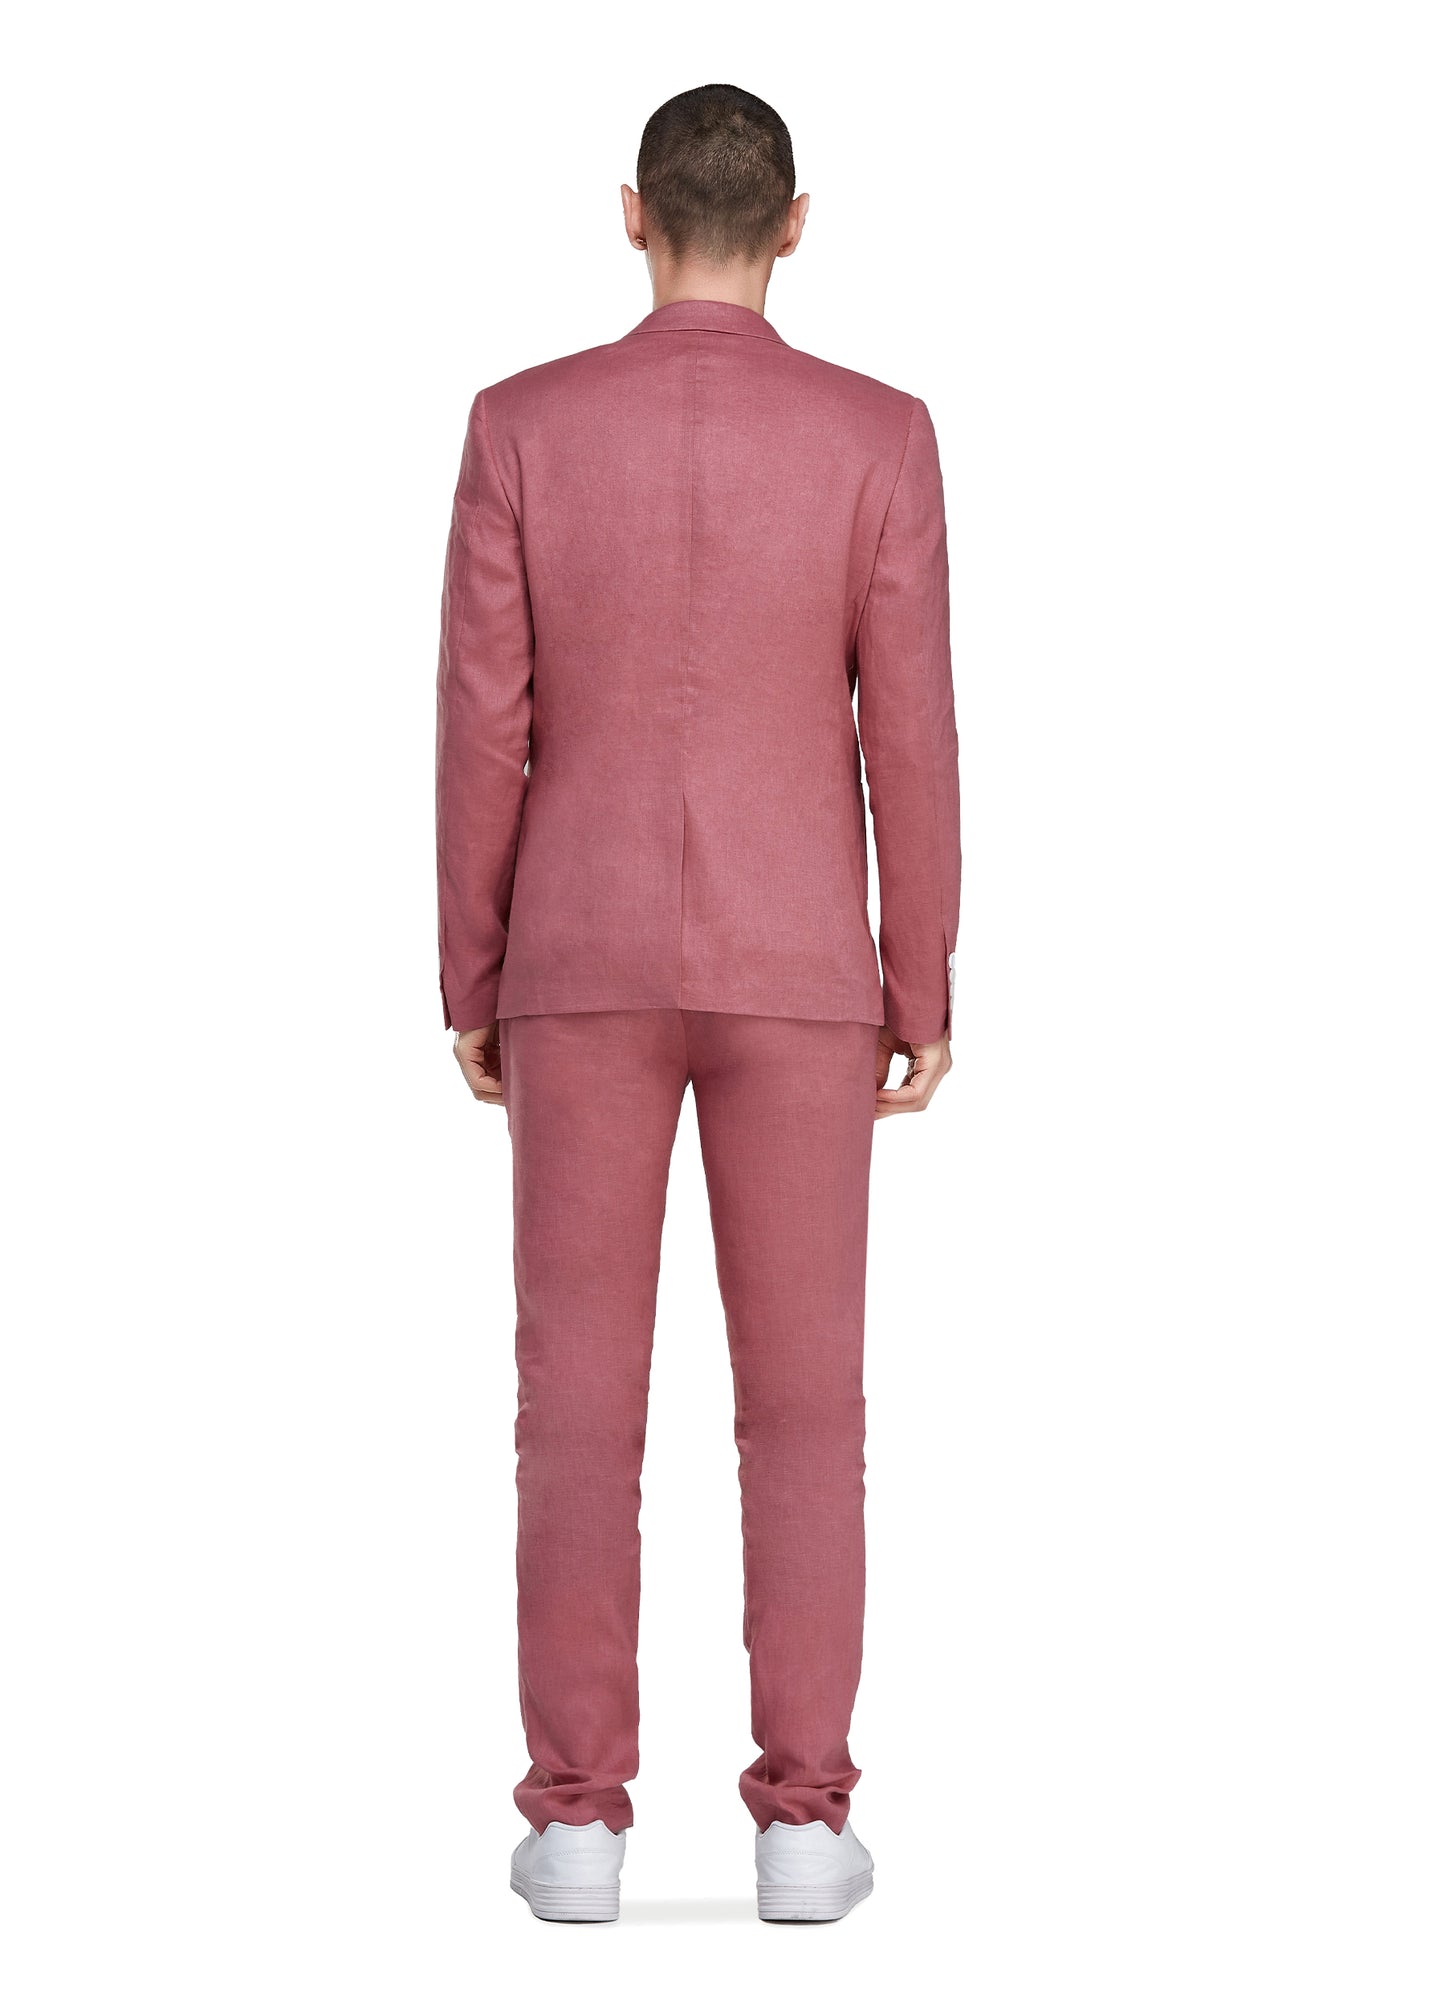 1PA1 Men's Linen Red Jacket Trousers 2-Pieces Suit Set